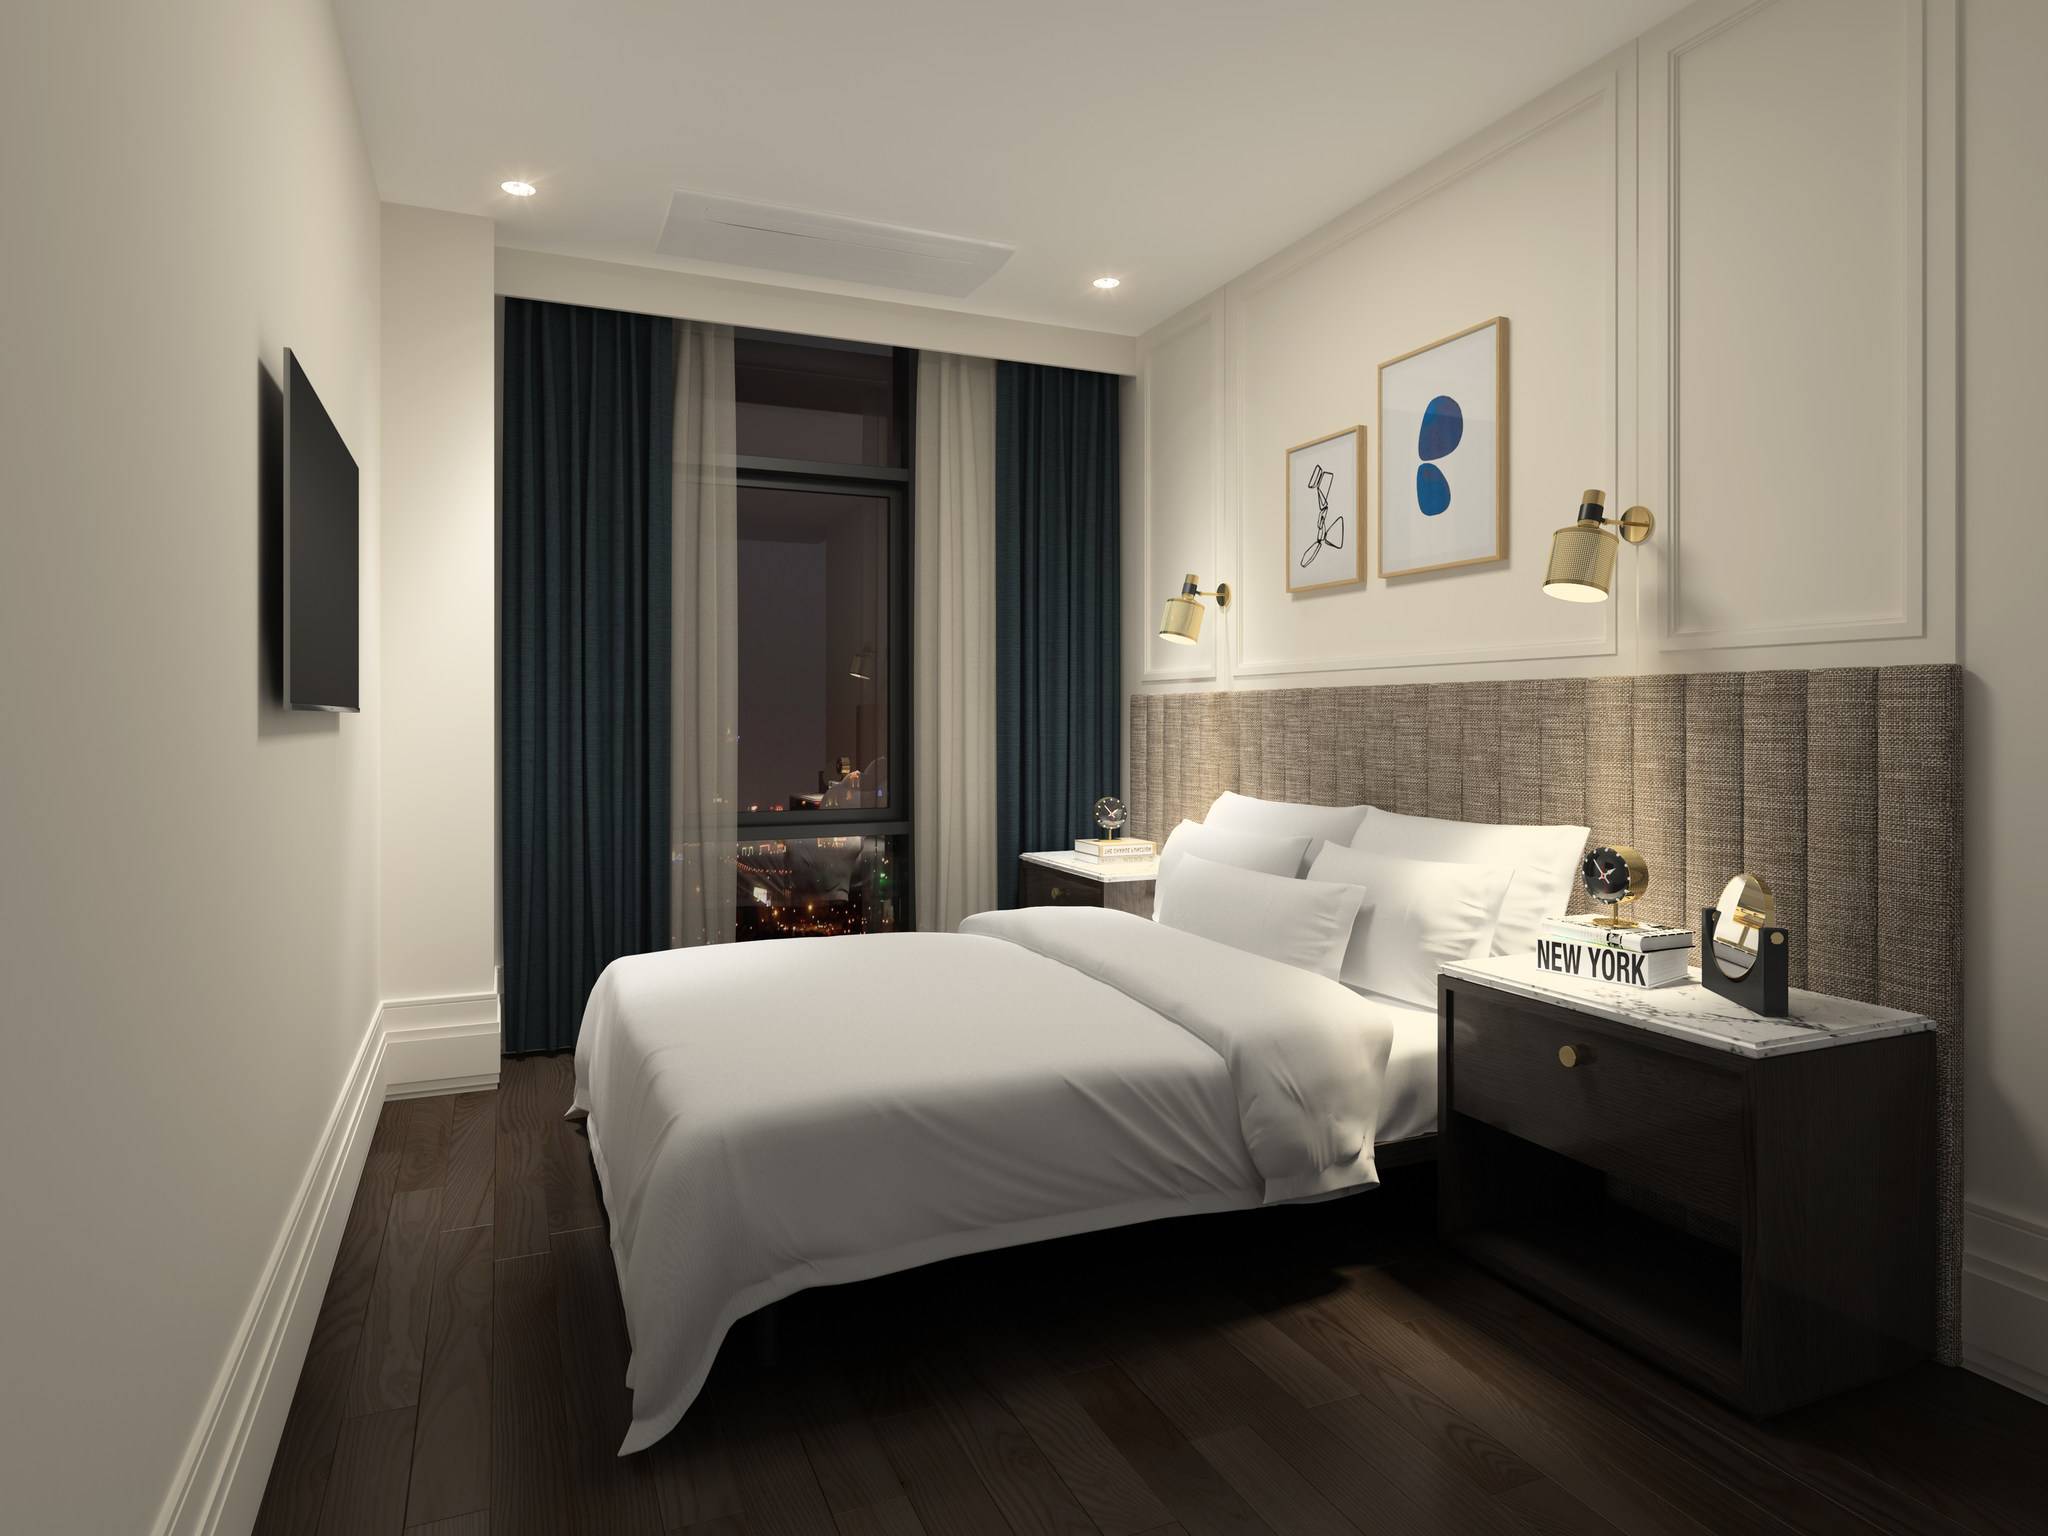 2019首爾新酒店 酒店的設計十分舒適。